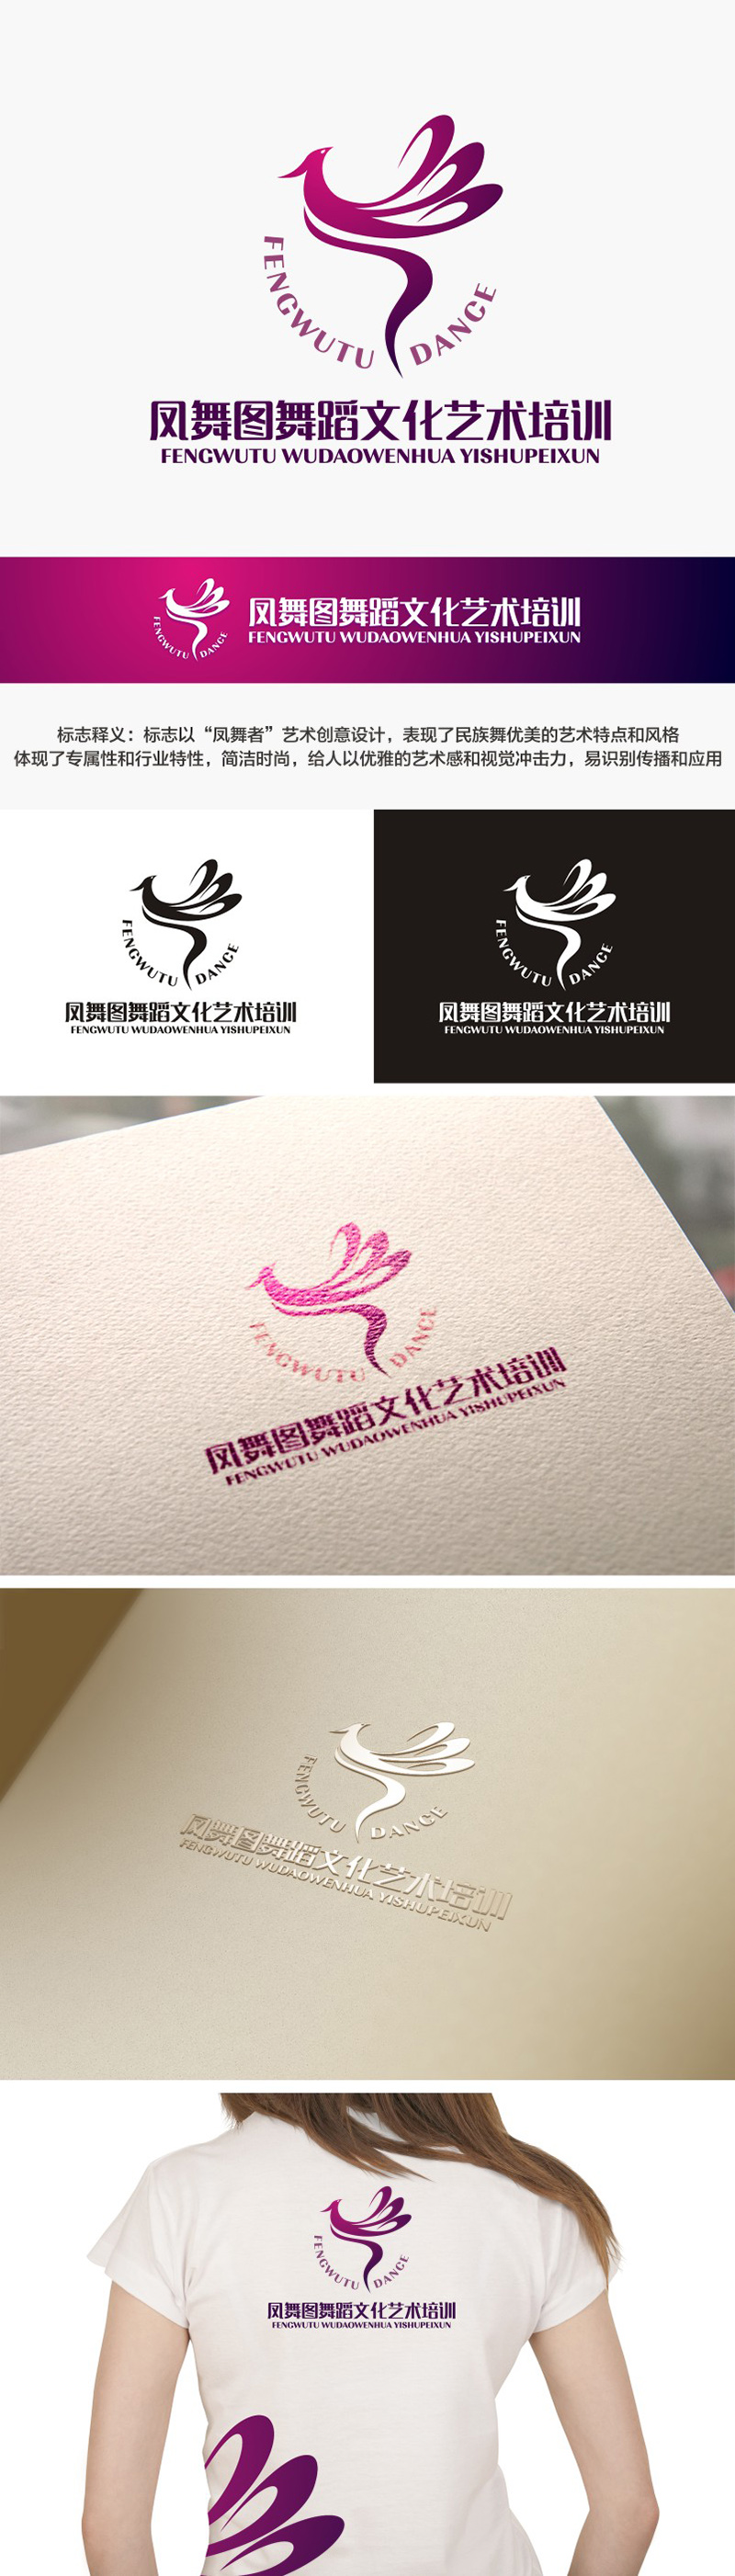 陈国伟的深圳市凤舞图舞蹈文化艺术培训有限公司logo设计